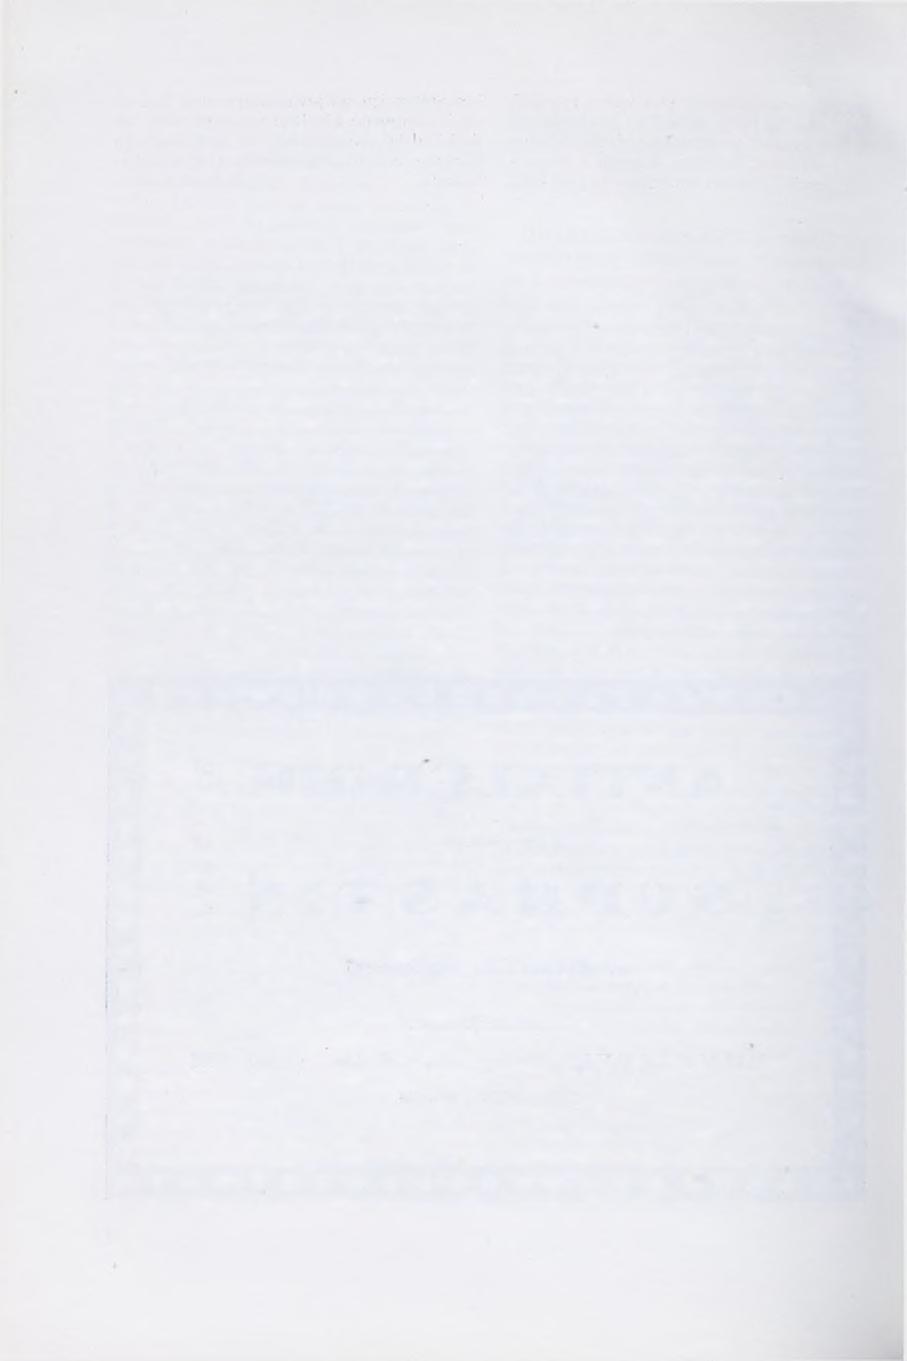 Prikazi knjiga R. Ivančić i V. Krstulović: ELEKTROKARDIOGRAFIJA»Školska knjiga«, Zagreb, 1960. 533 str., 91 crtež, 5 tablica i 314 slika. Cijena 2.100 d.